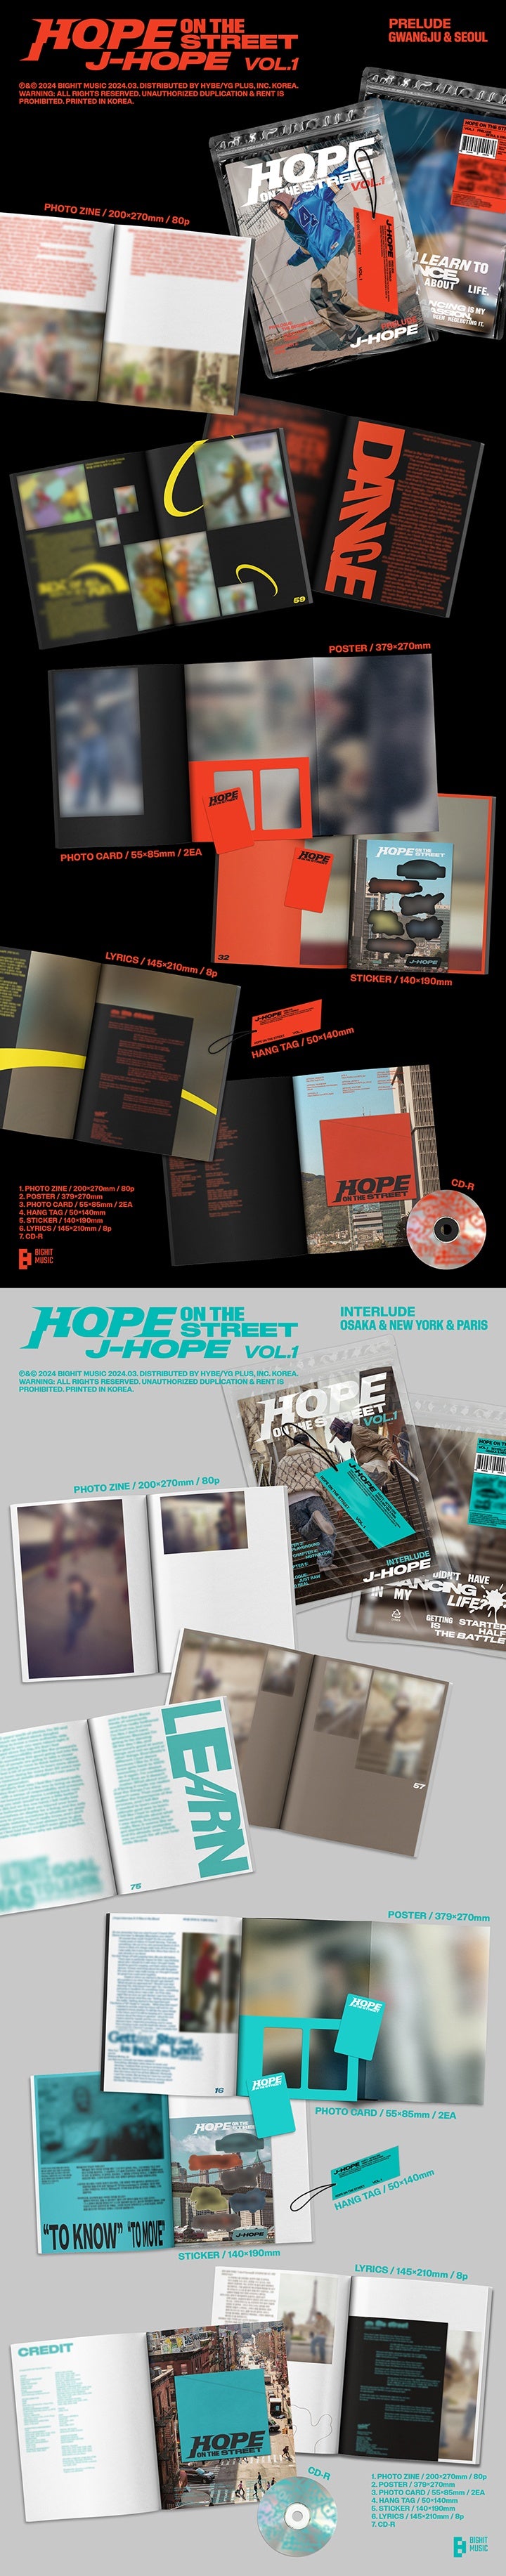 J-Hope Hope on the street Vol 1